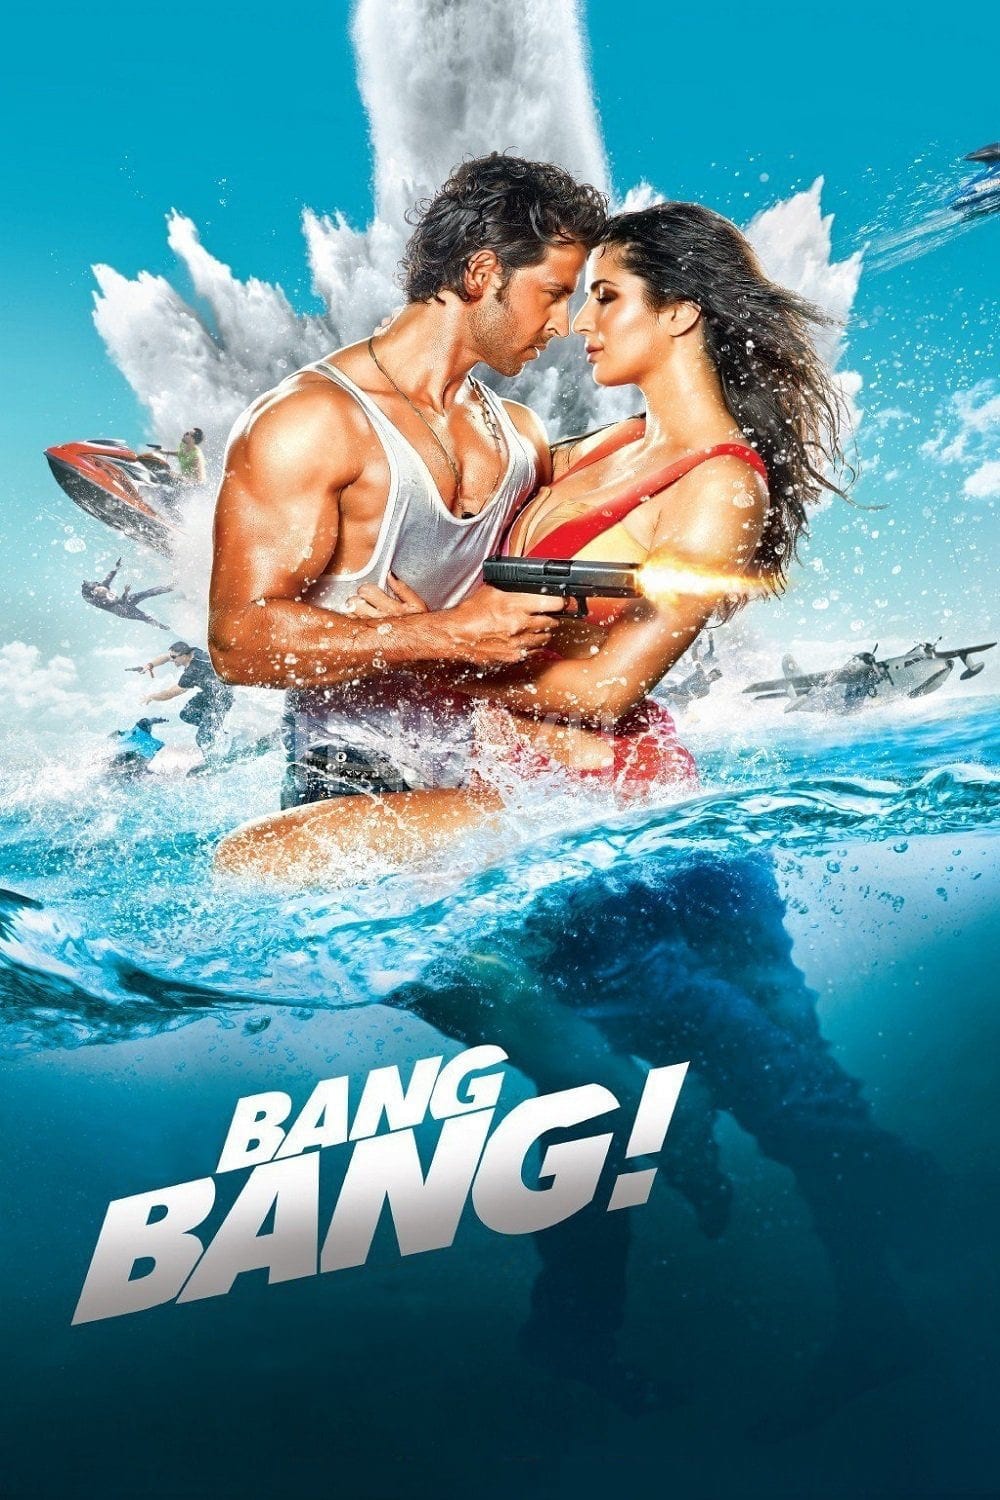 Image from the movie "Bang Bang"